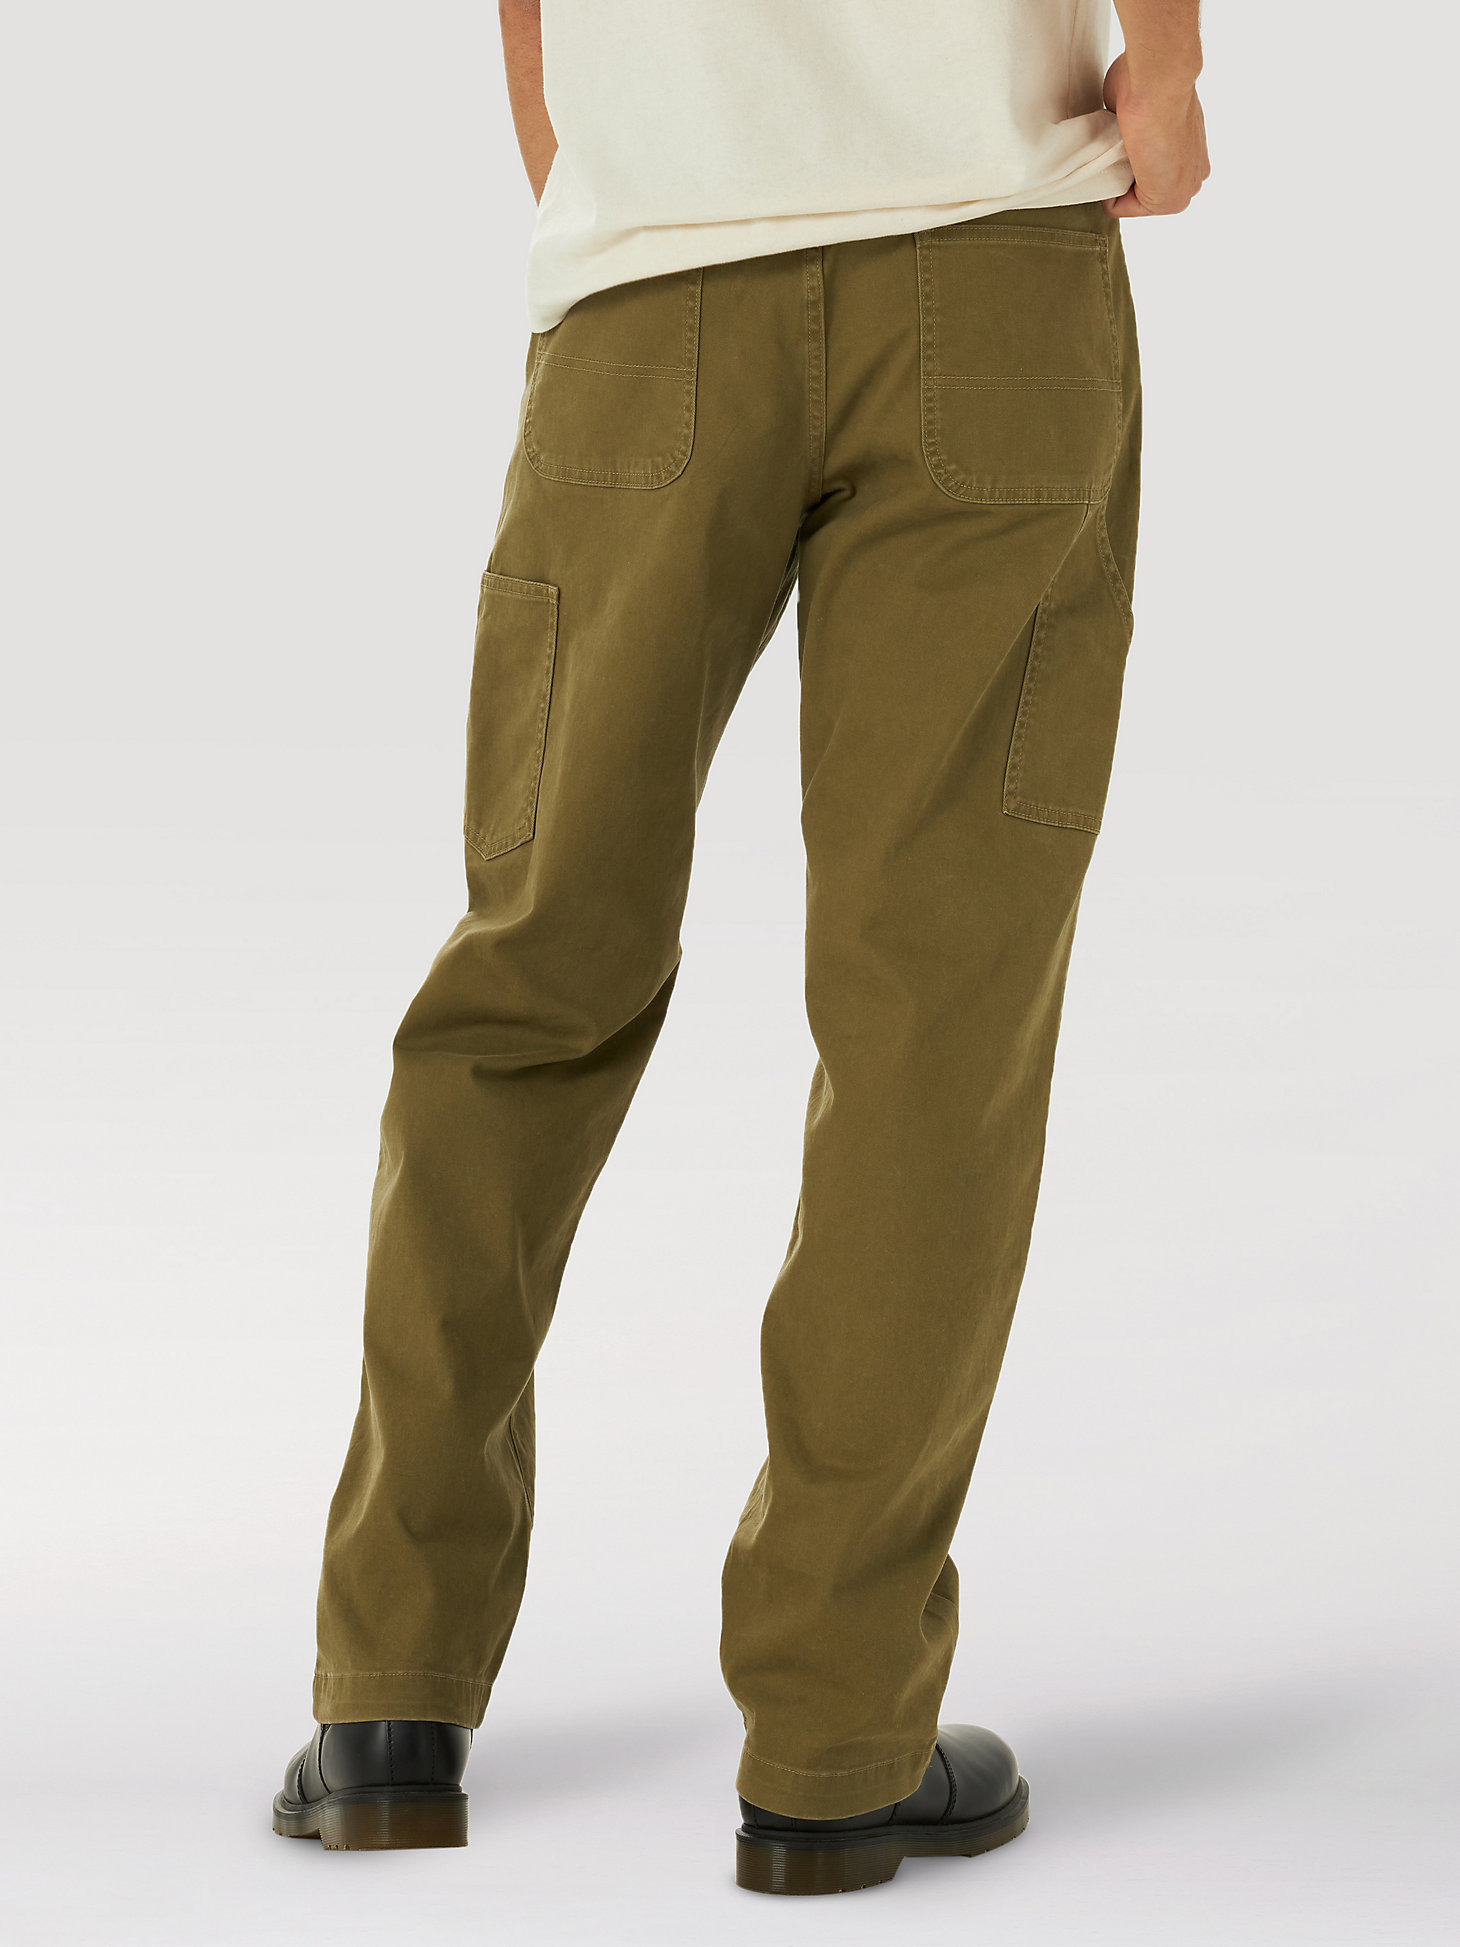 Men's Wrangler® Casey Jones Utility Pant in Lone Tree Green alternative view 1